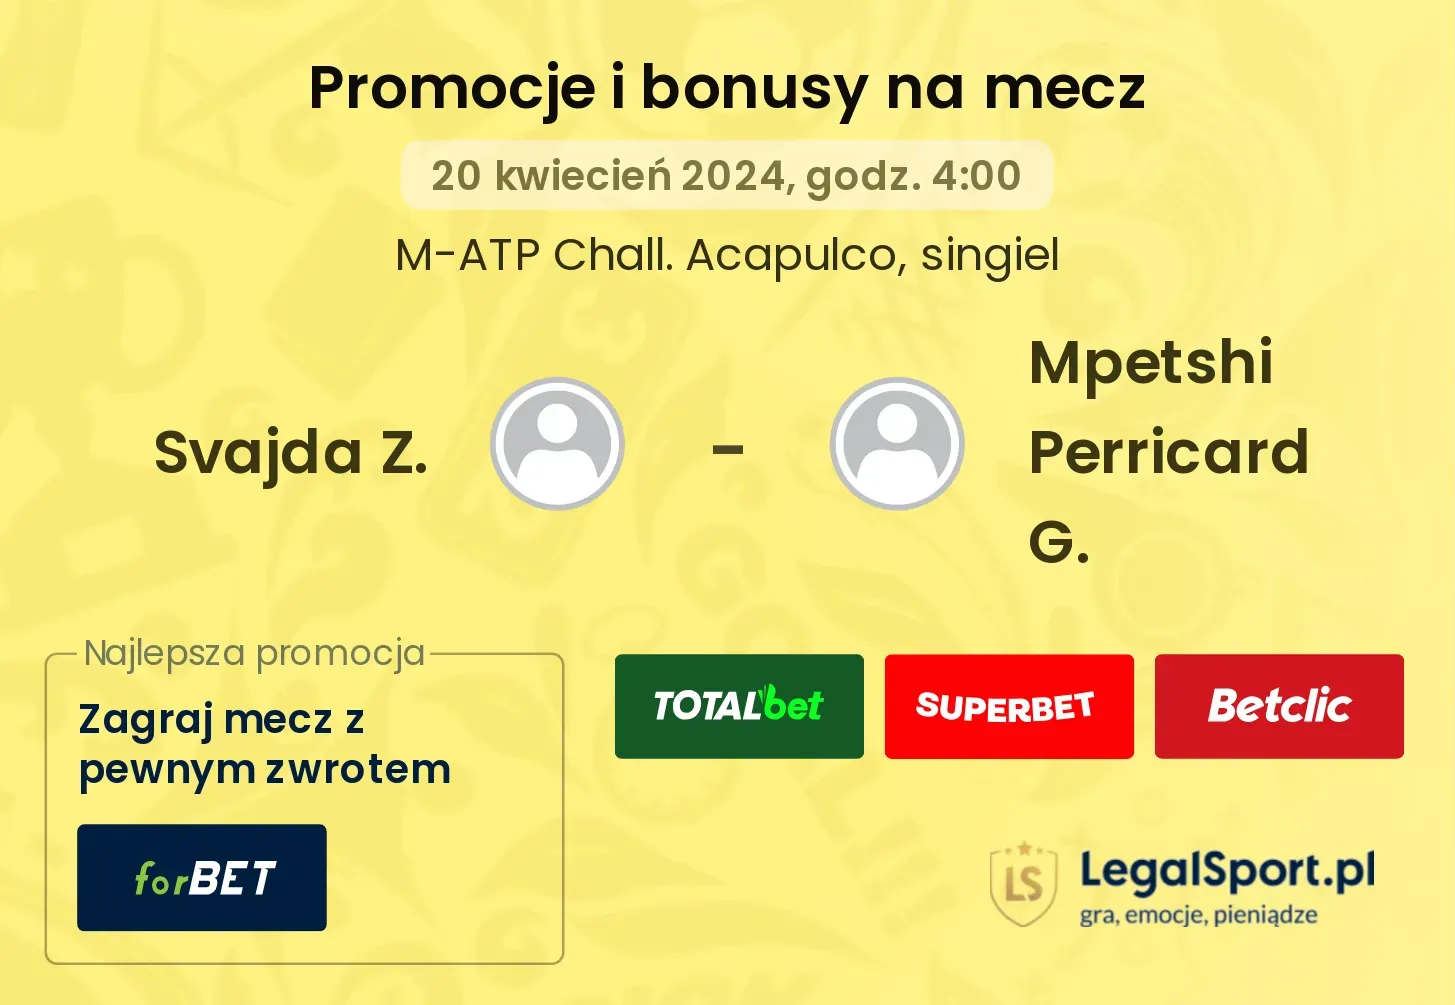 Svajda Z. - Mpetshi Perricard G. promocje bonusy na mecz